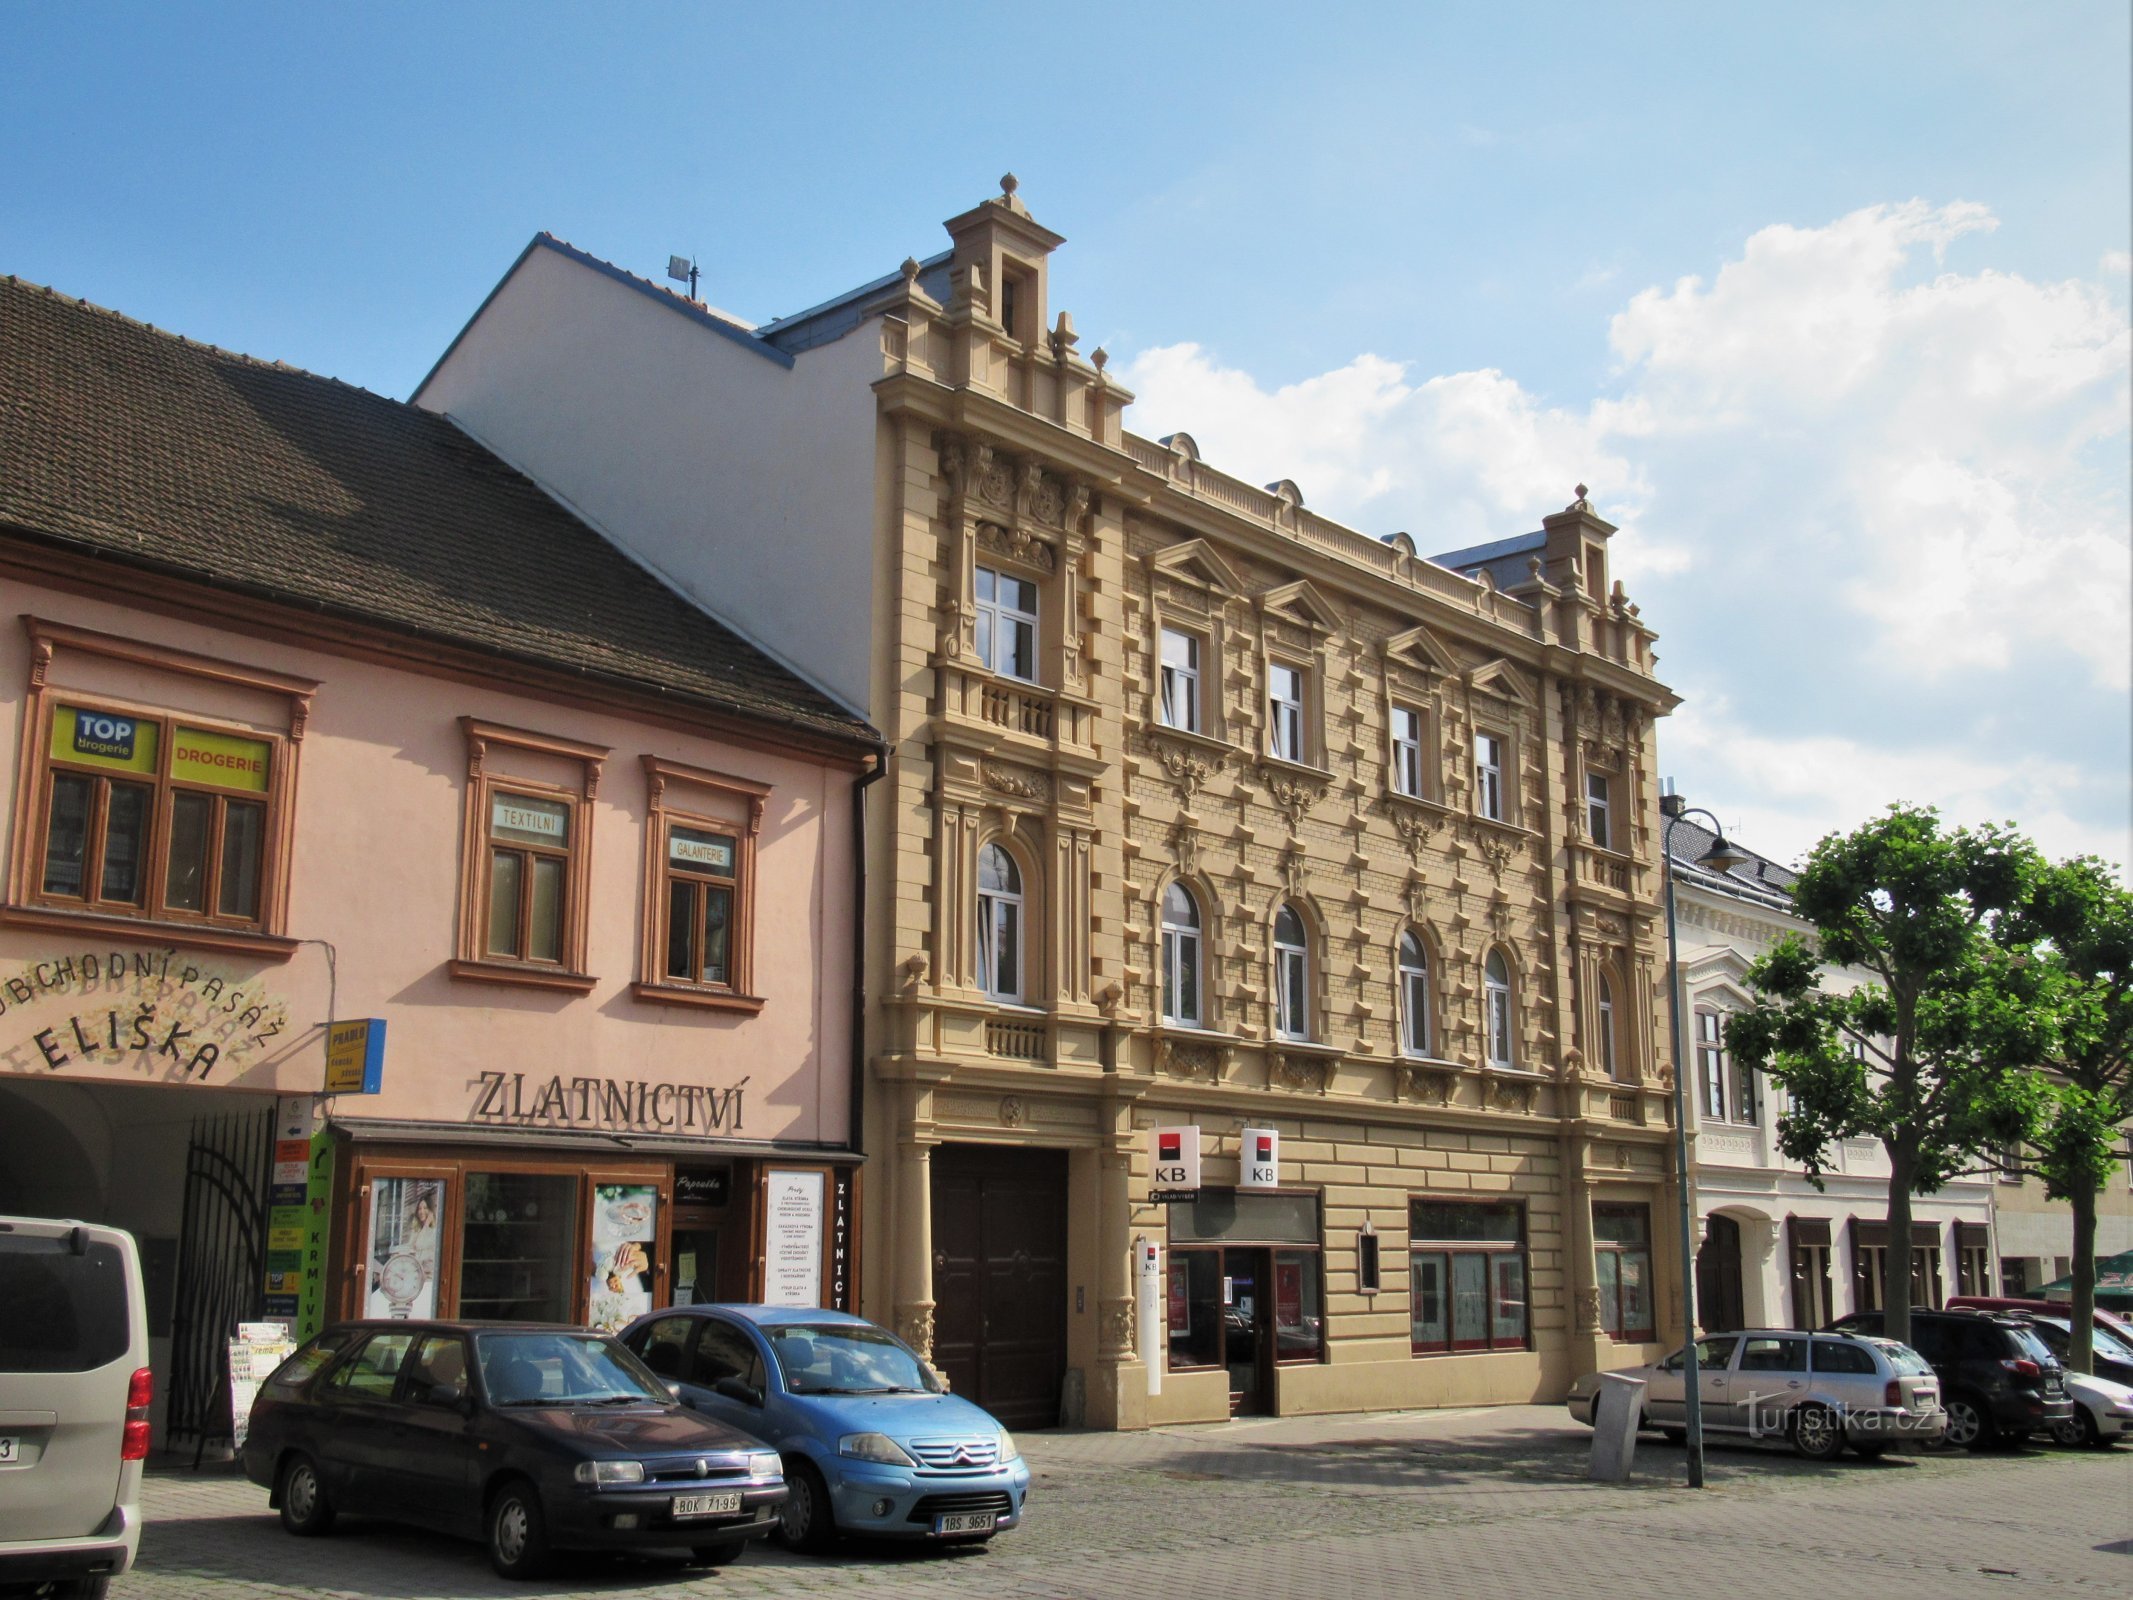 Židlochovice - будинок № 28 на Náměstí Míru